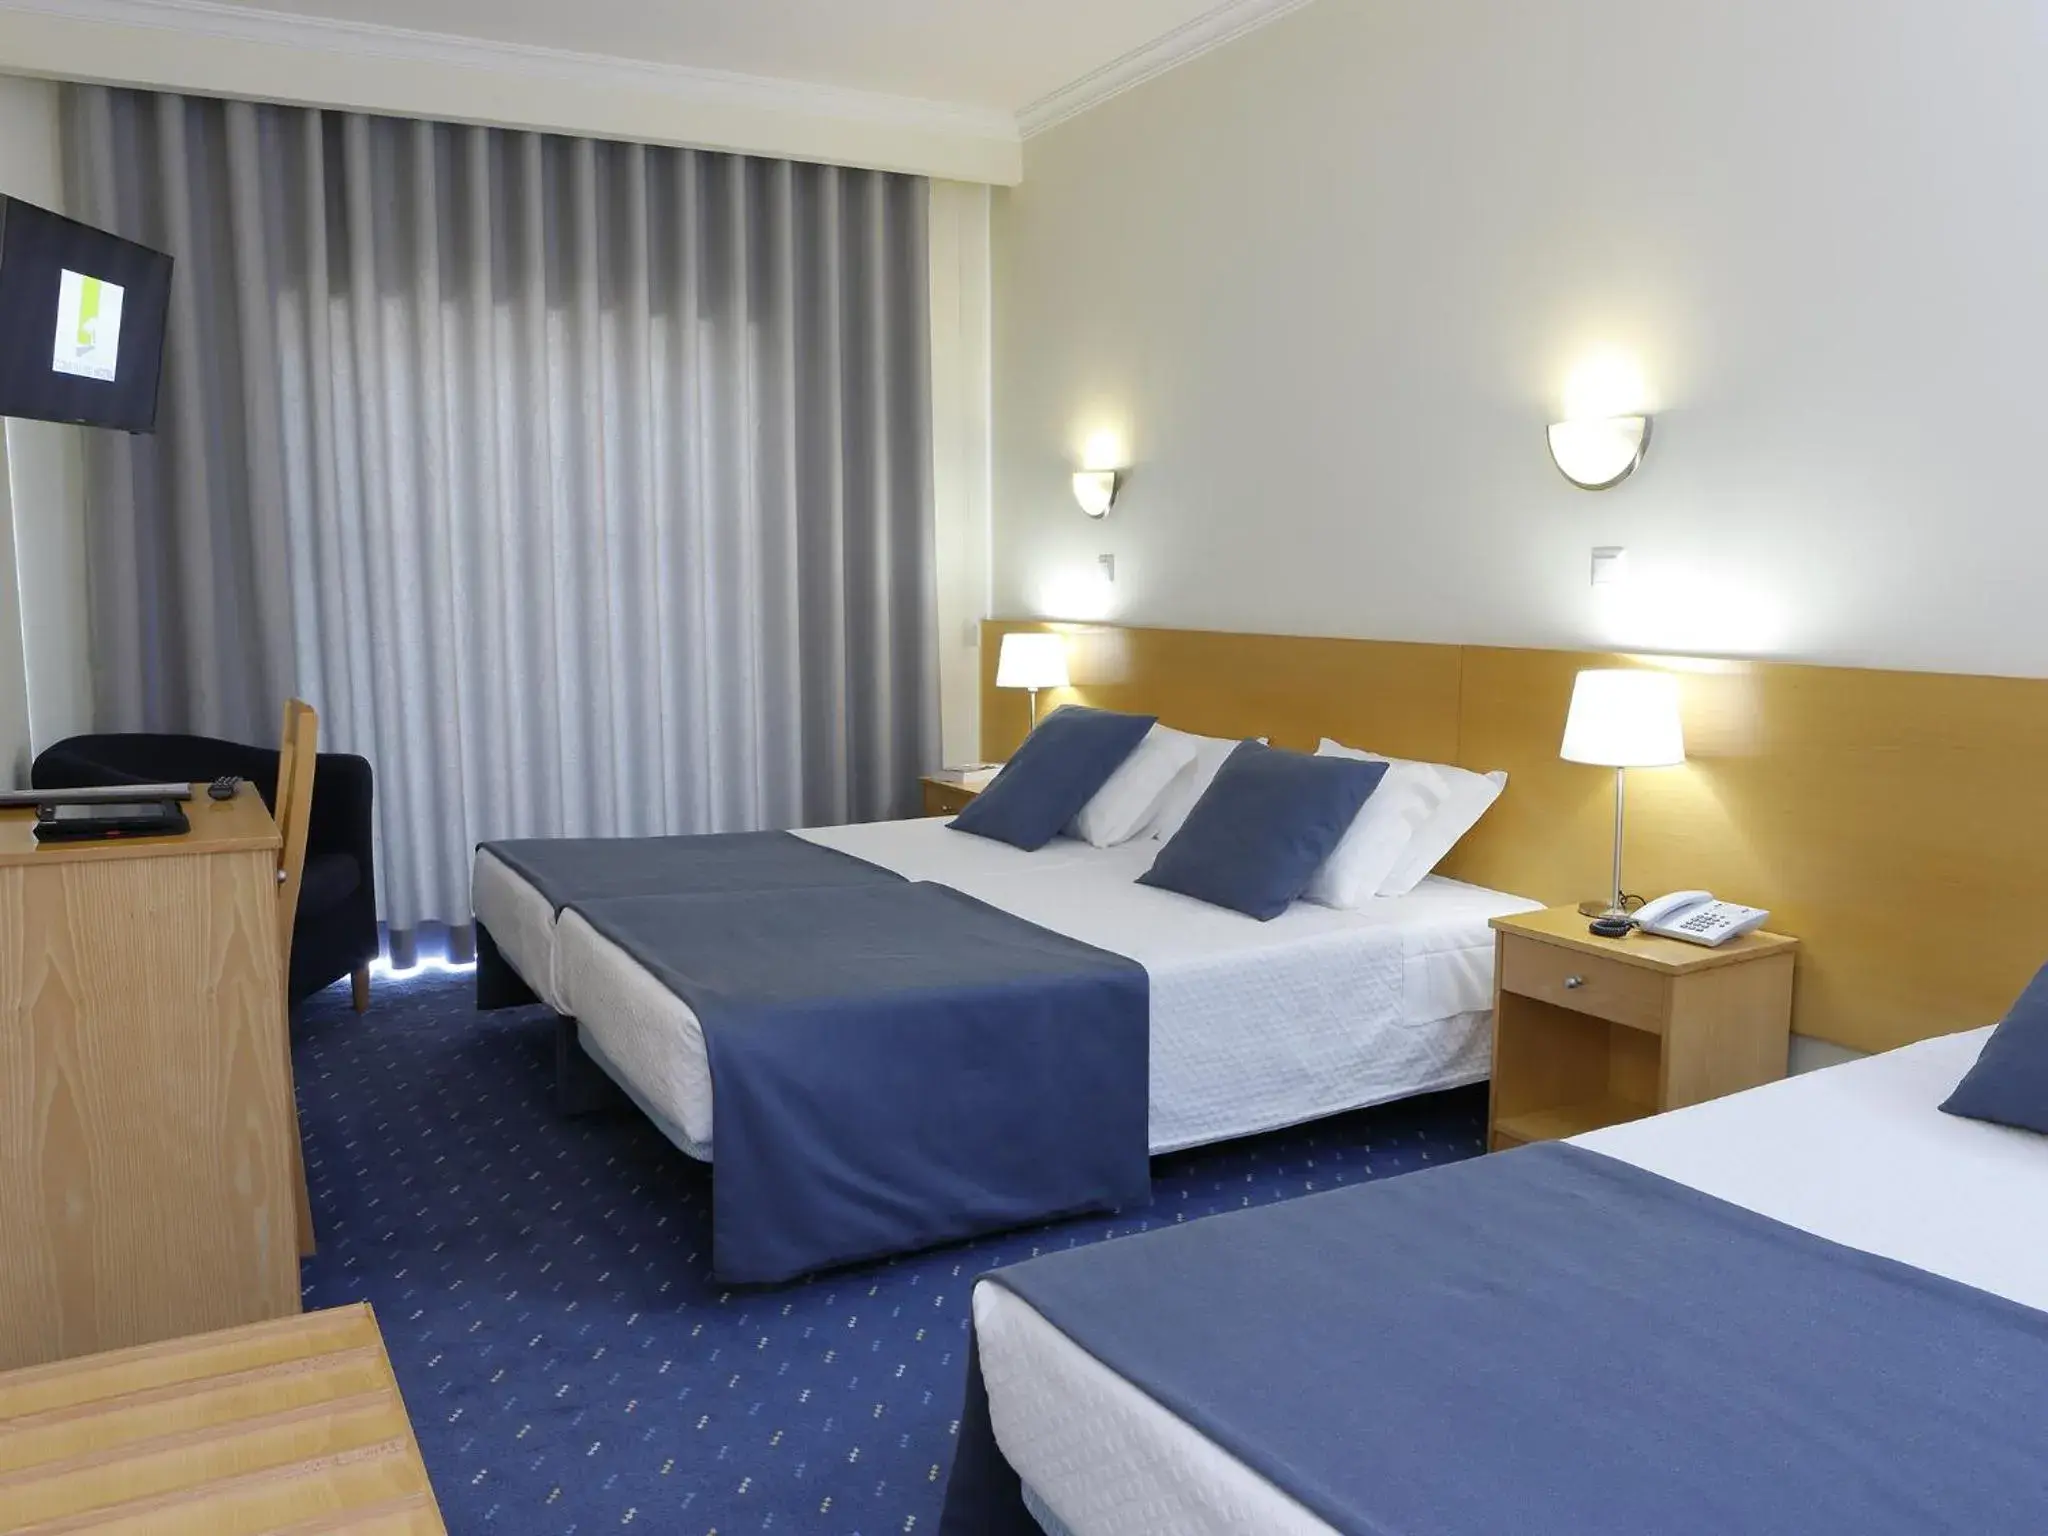 Bed, Room Photo in Cova da Iria Hotel